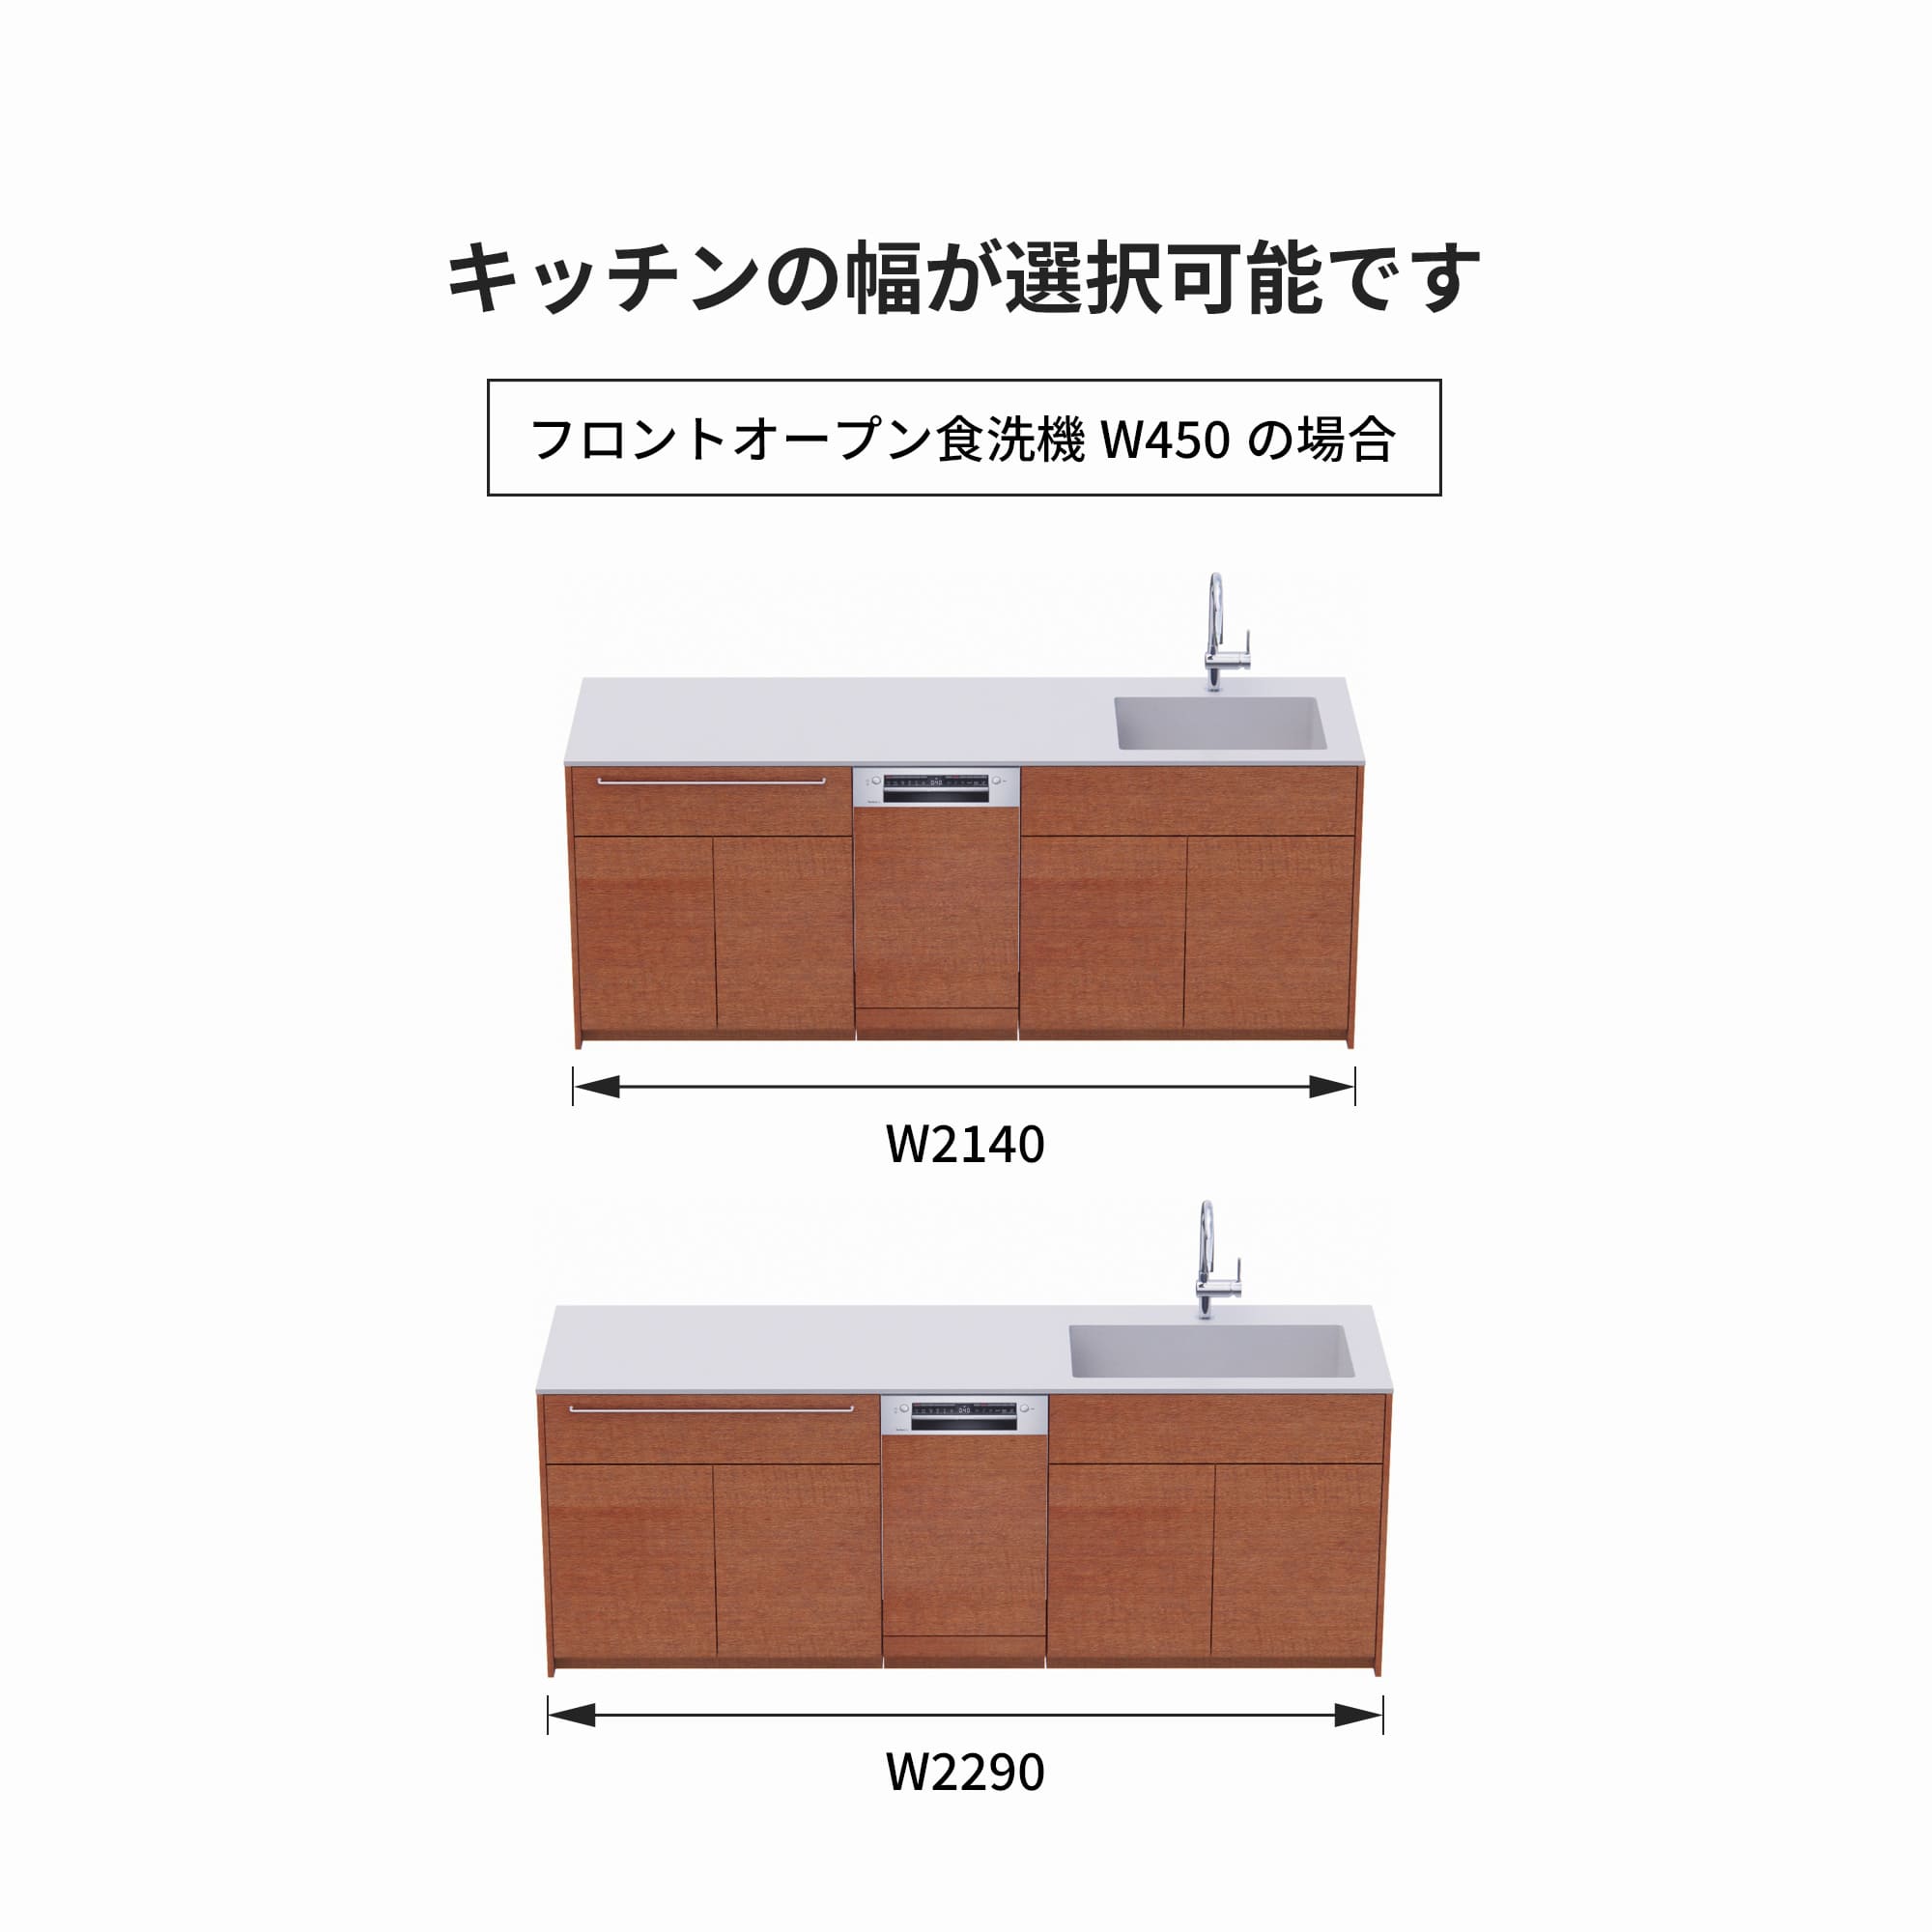 木製システムキッチン 対面型 W2140～2290・コンロなし / オーブンなし / 食洗機あり KB-KC022-39-G183 フロントオープン450の場合